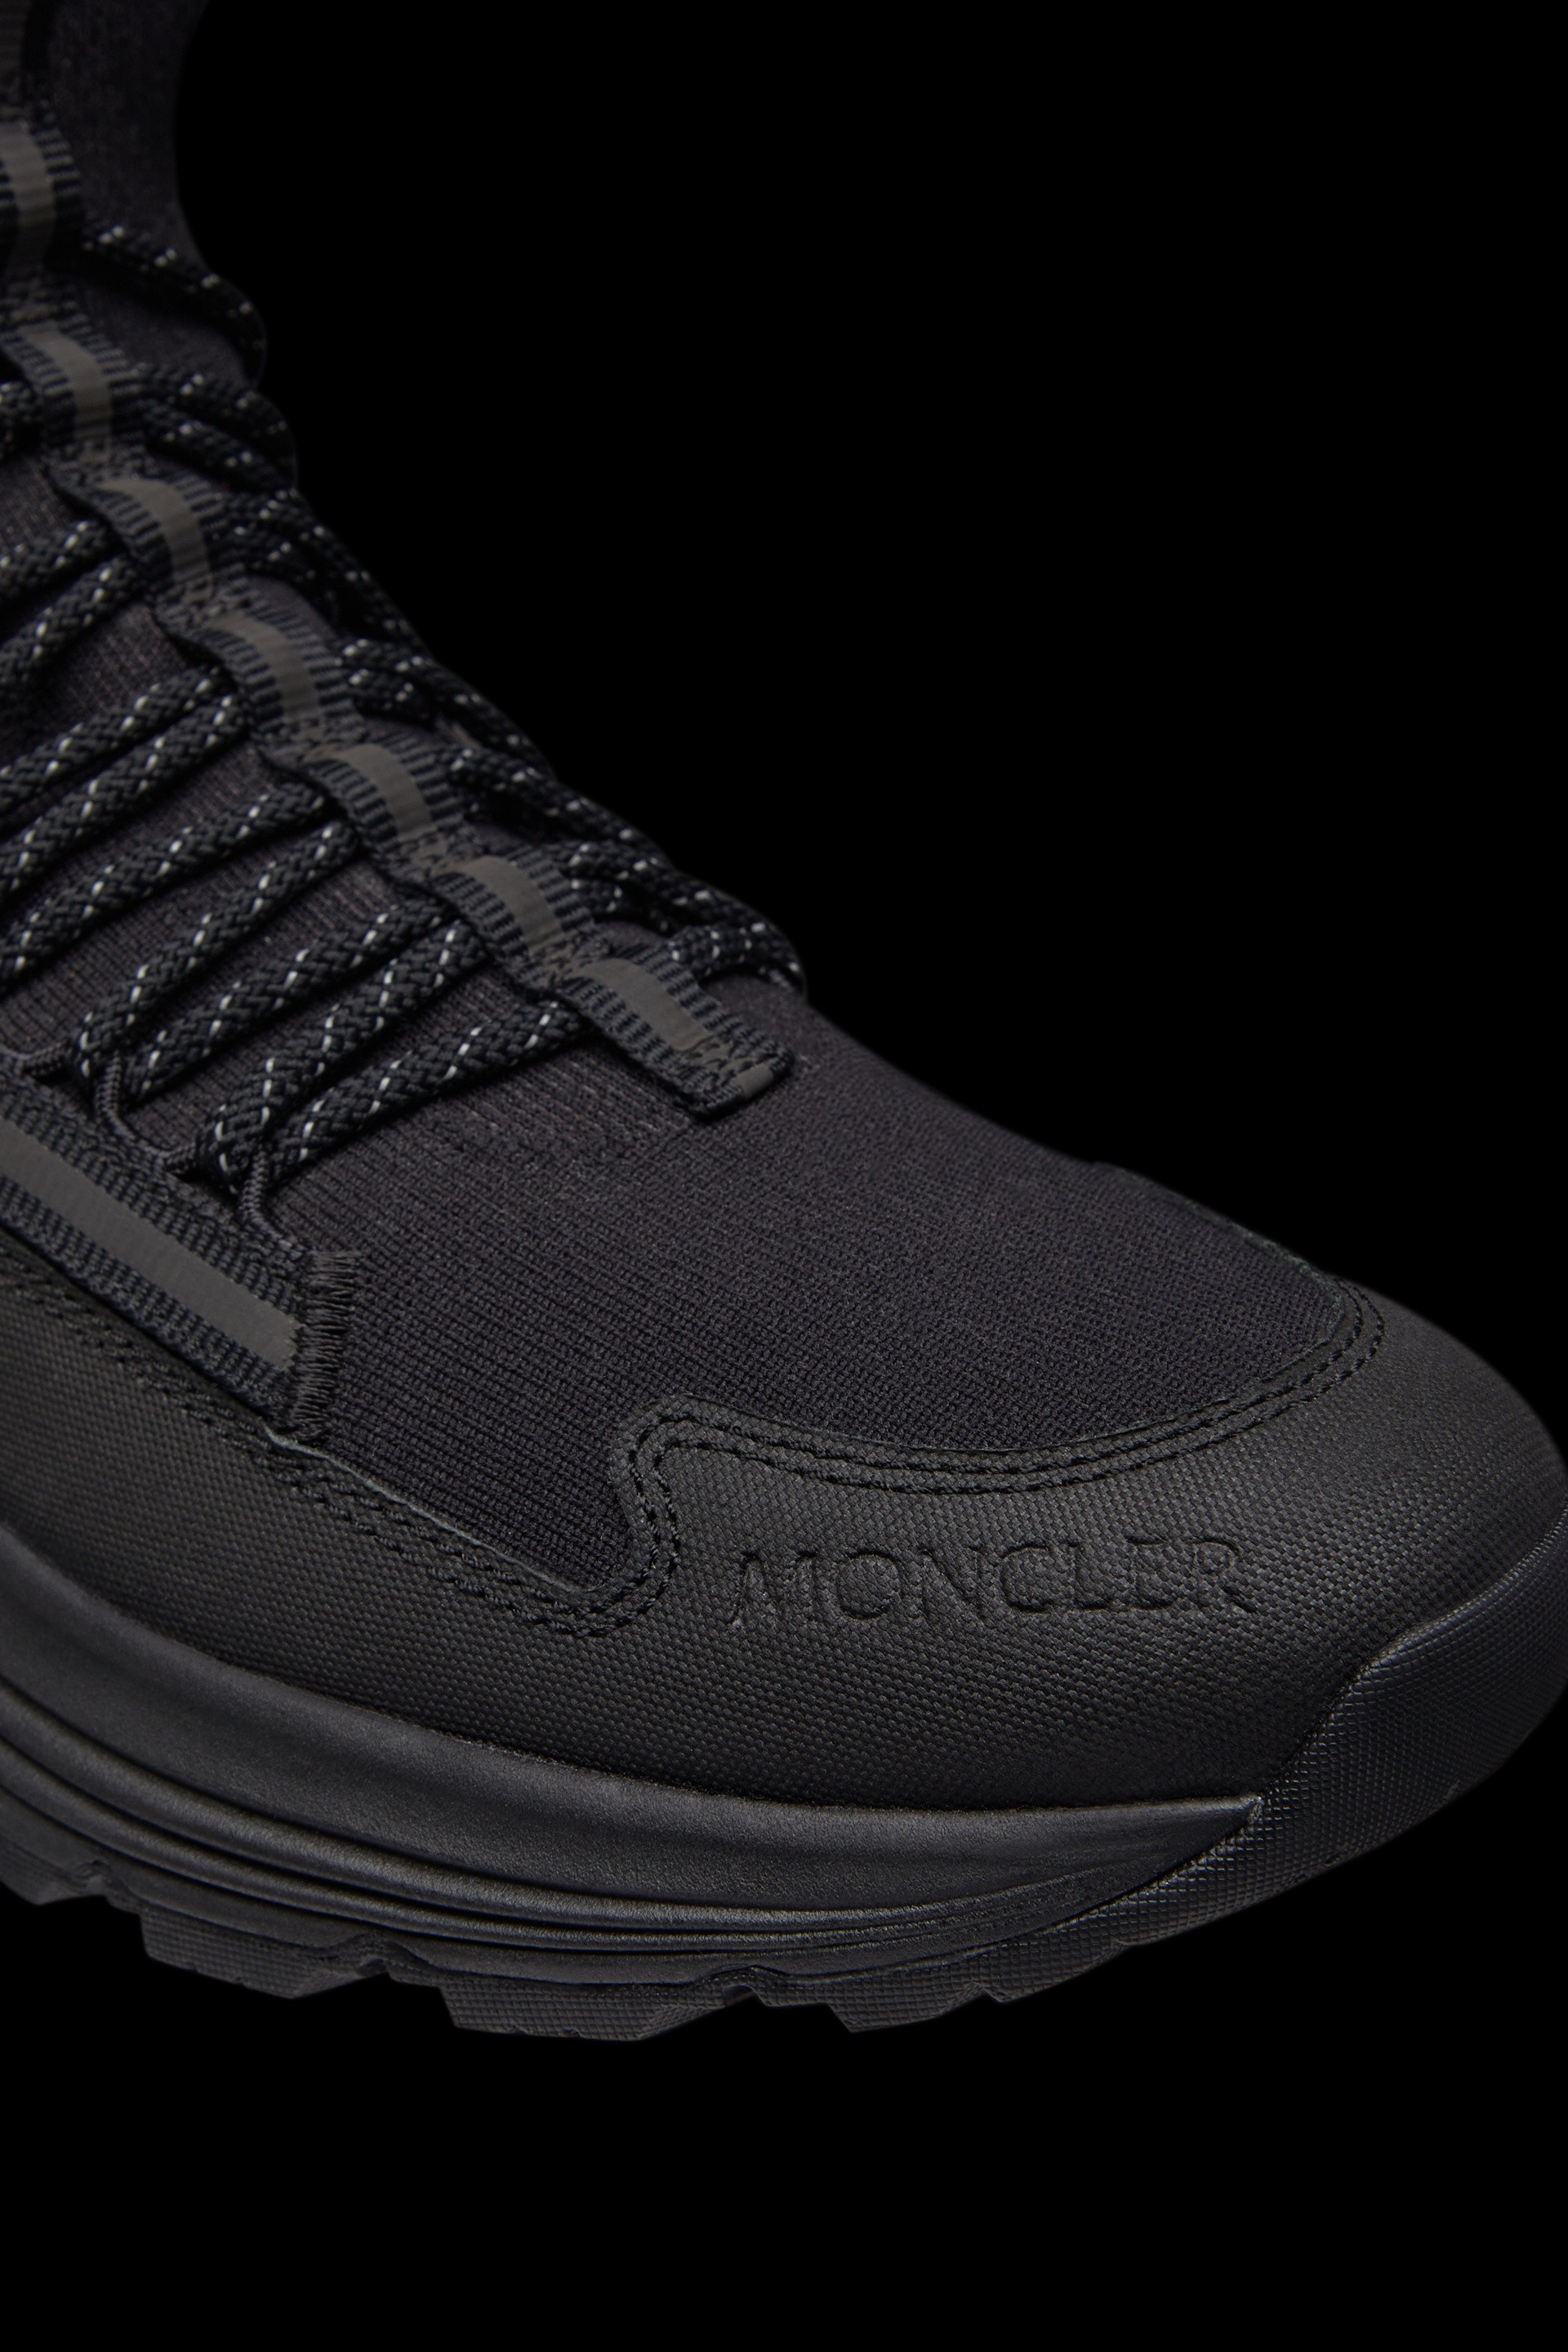 Monte Runner Sneakers - 4